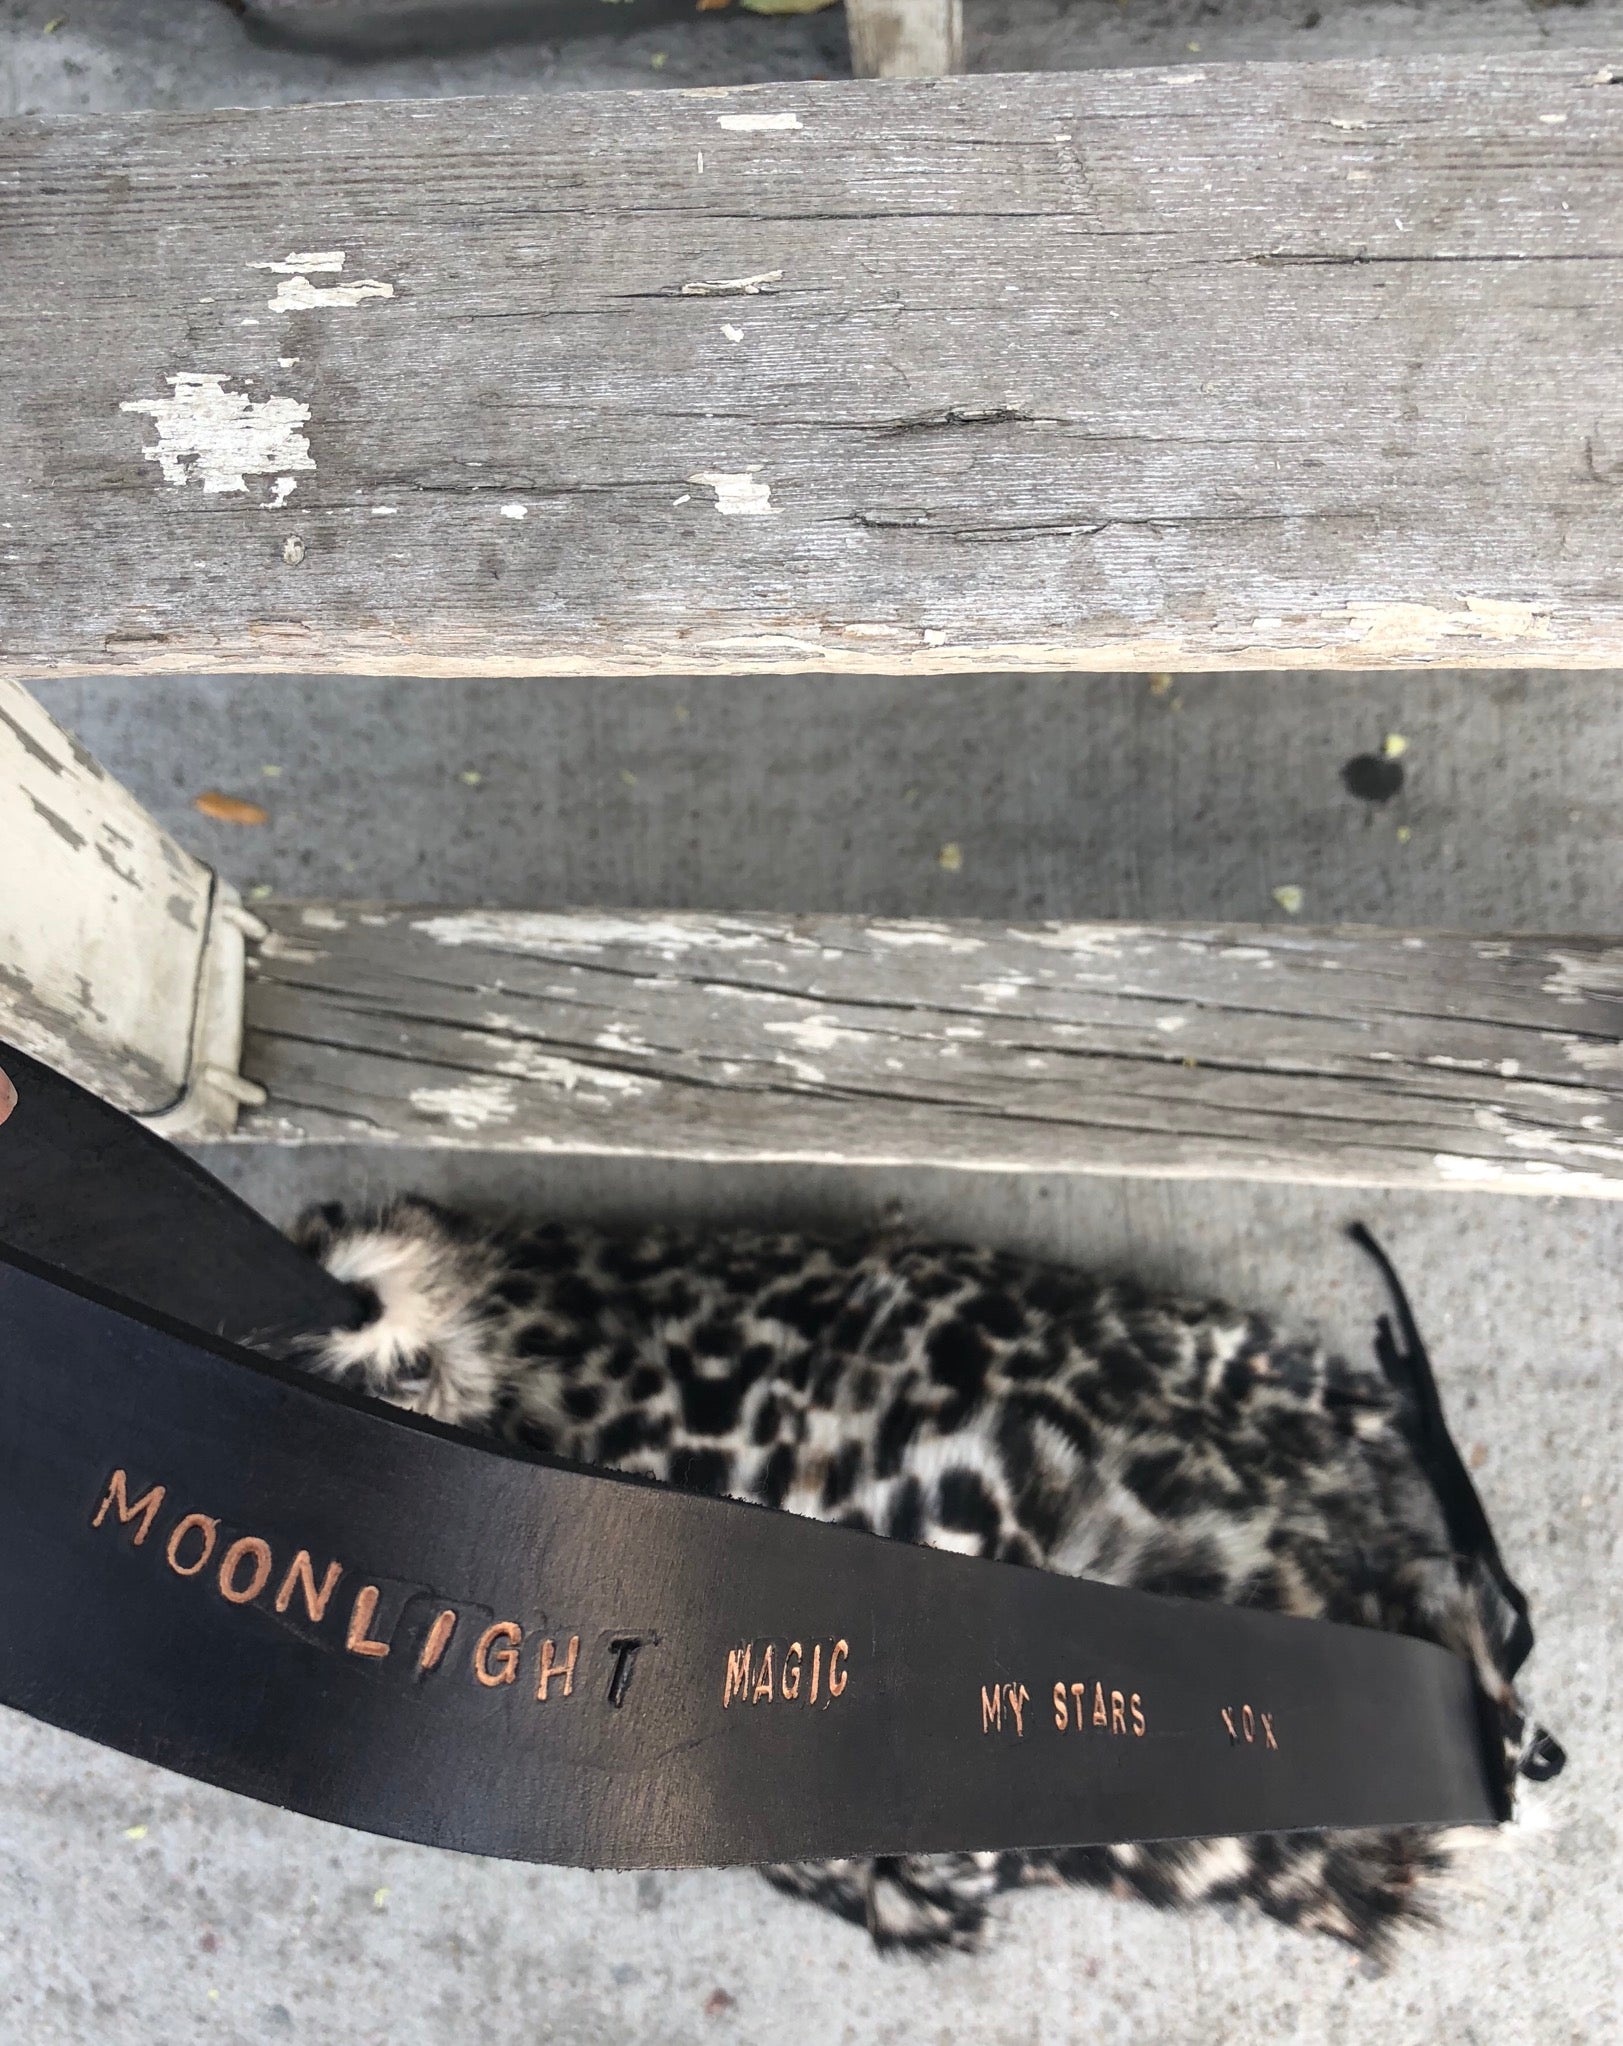 Moonlight magic handbag